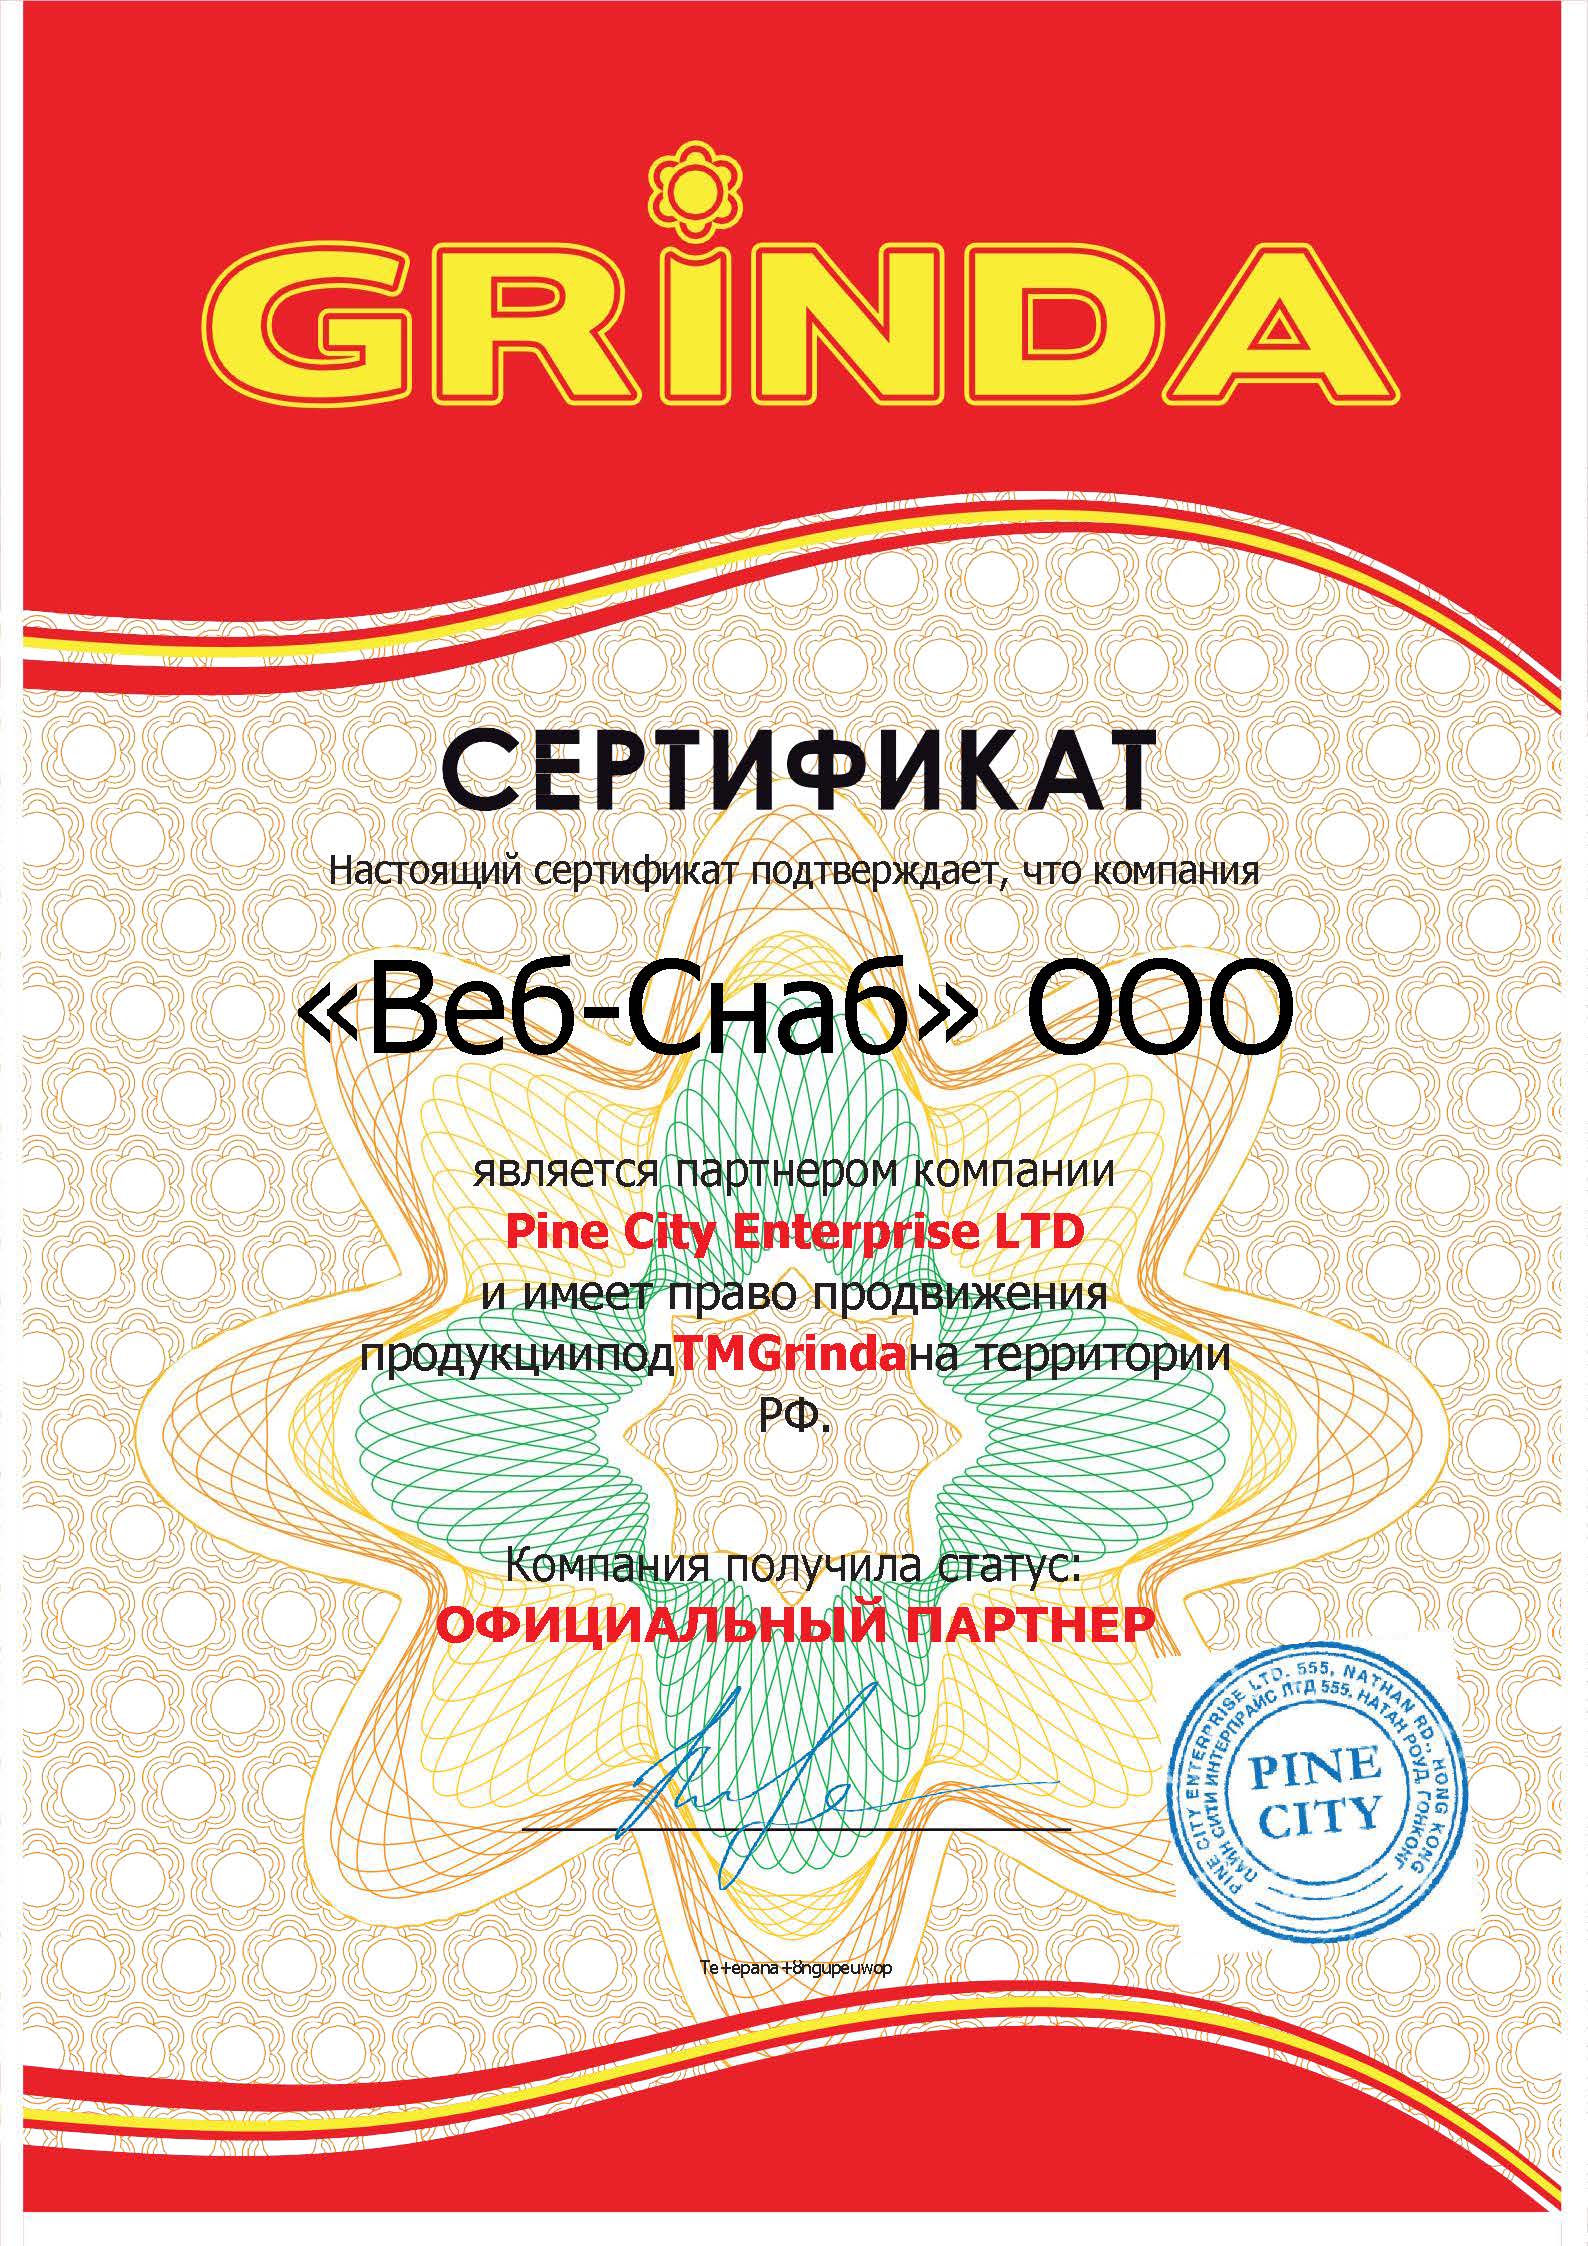 сертификат grinda